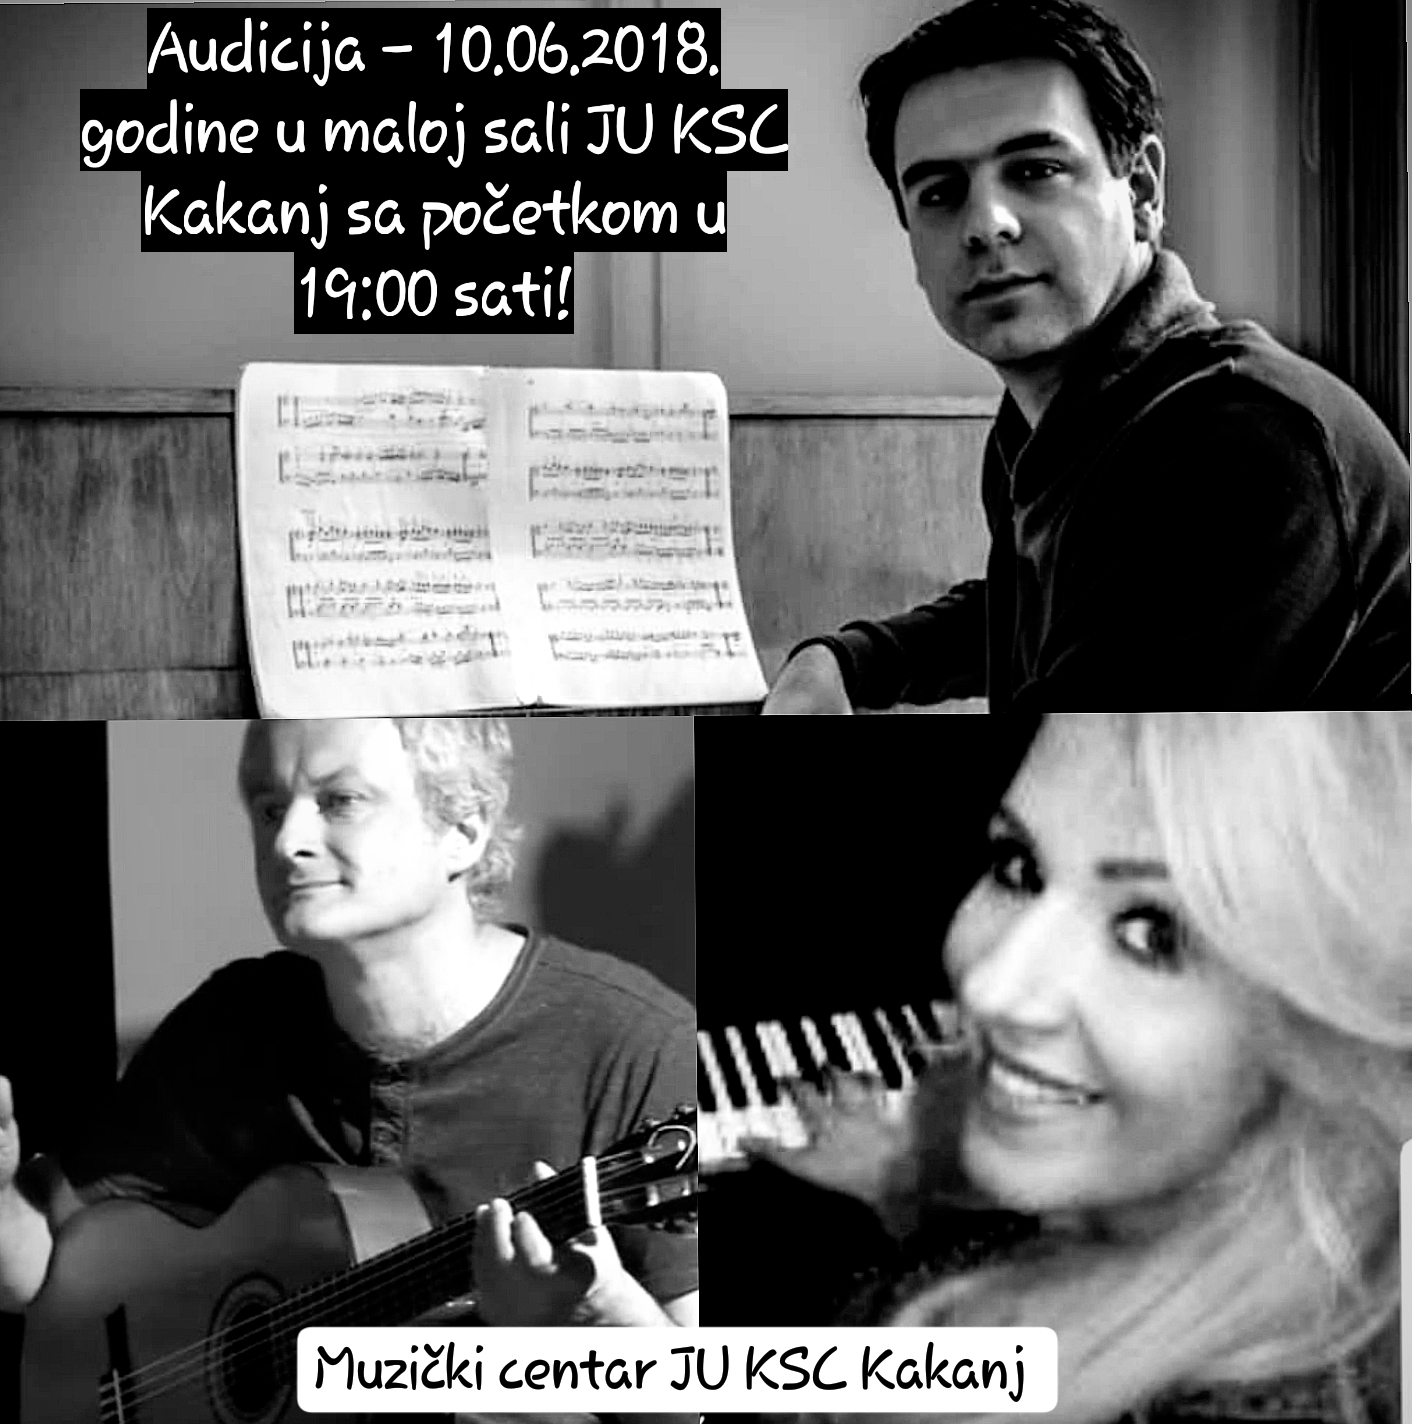 Muzički centar JU KSC Kakanj / Audicija u ponedjeljak 10.09.2018. godine u maloj sali